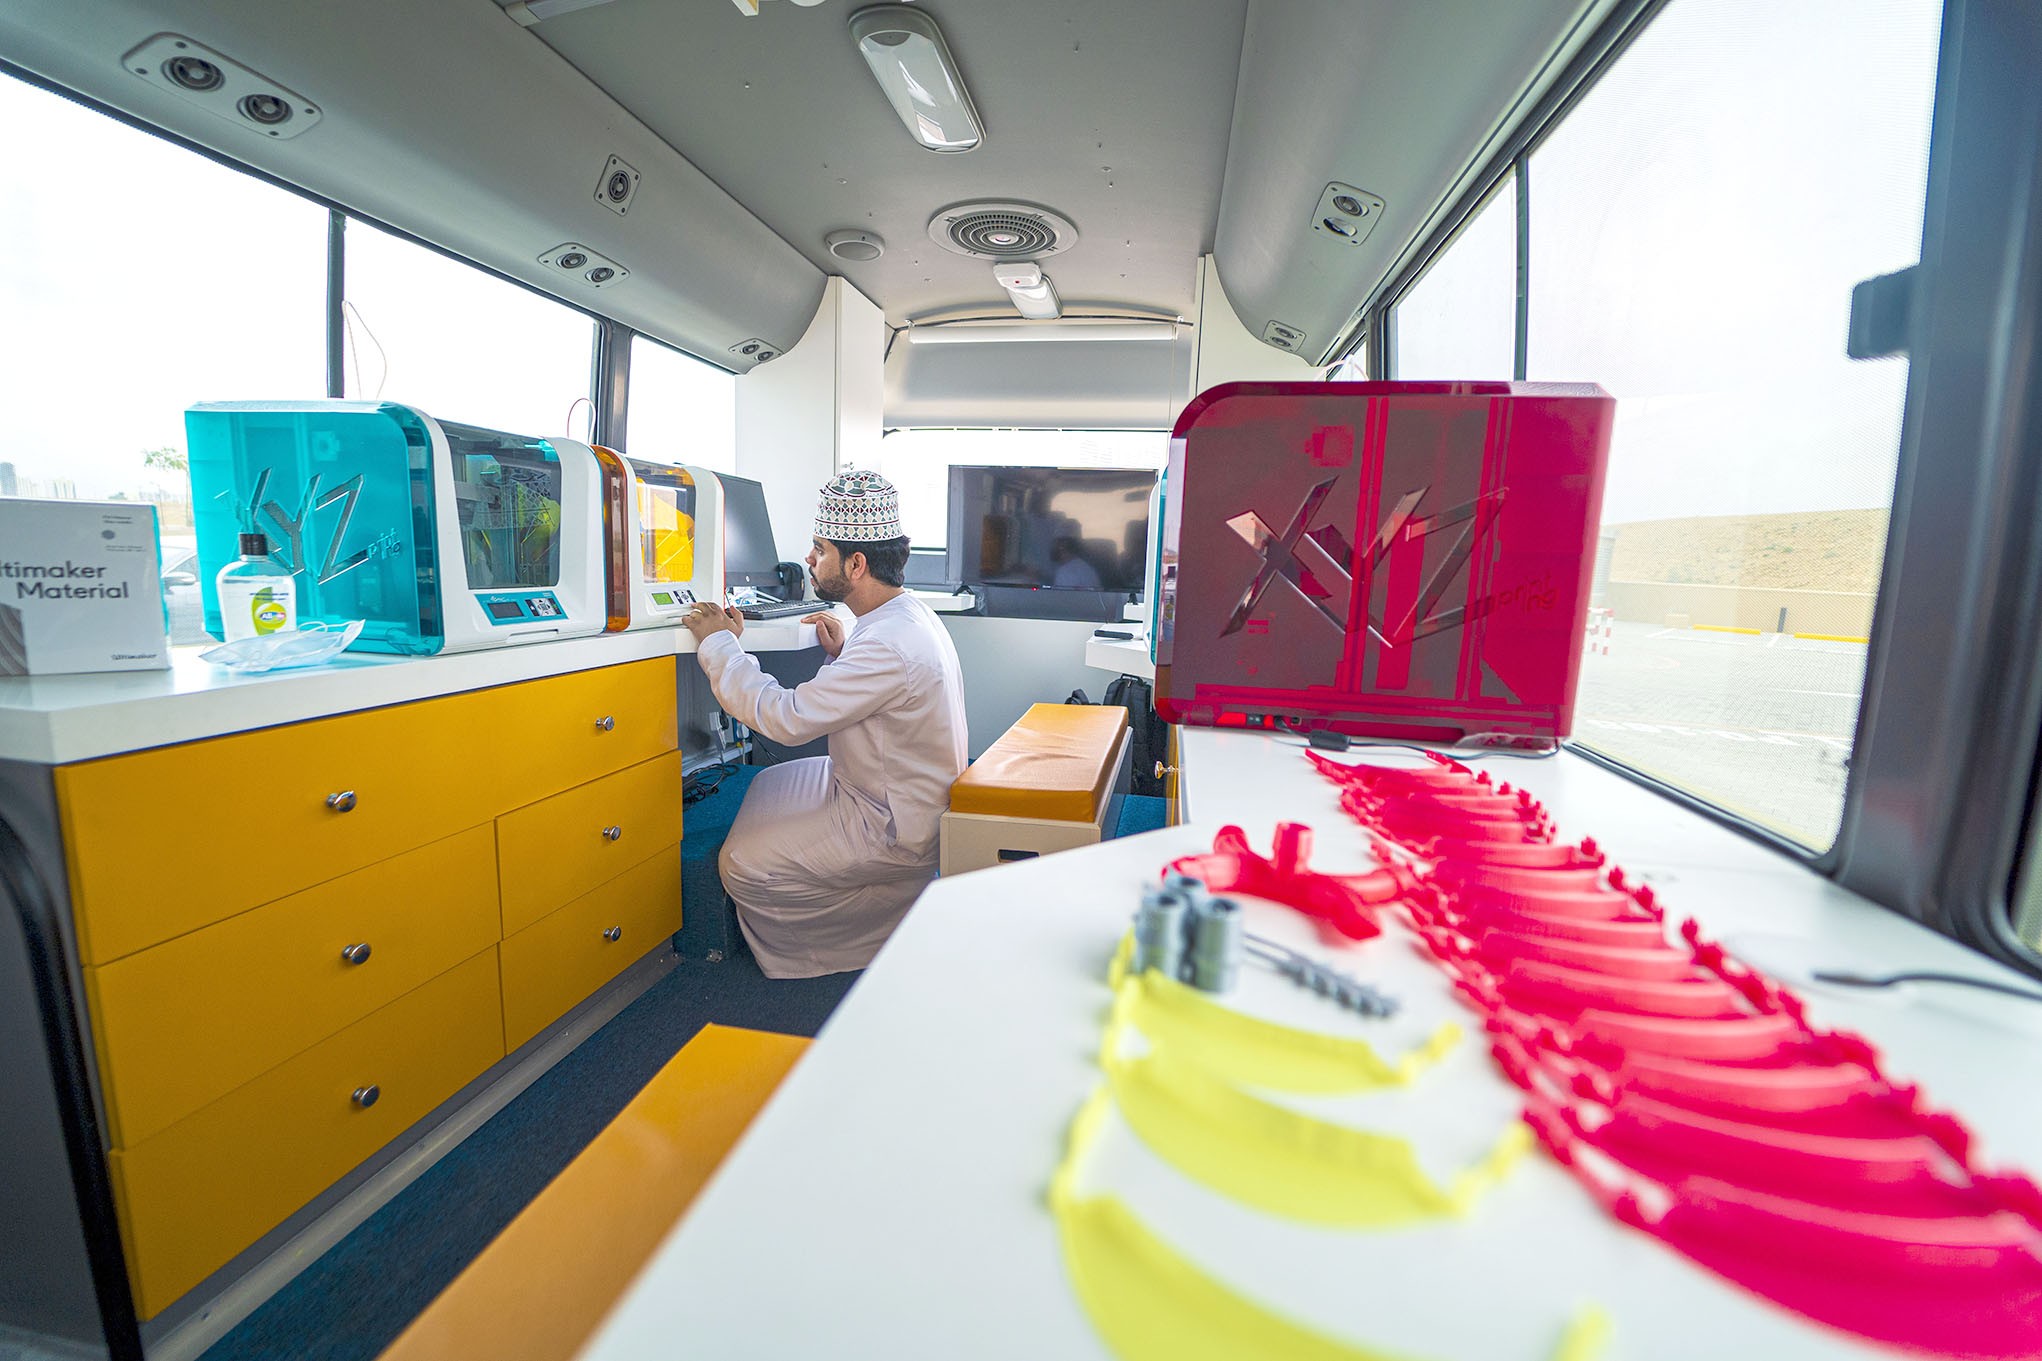 عمانتل توفر أدوات طبية بإستخدام طابعات ثلاثية الأبعاد